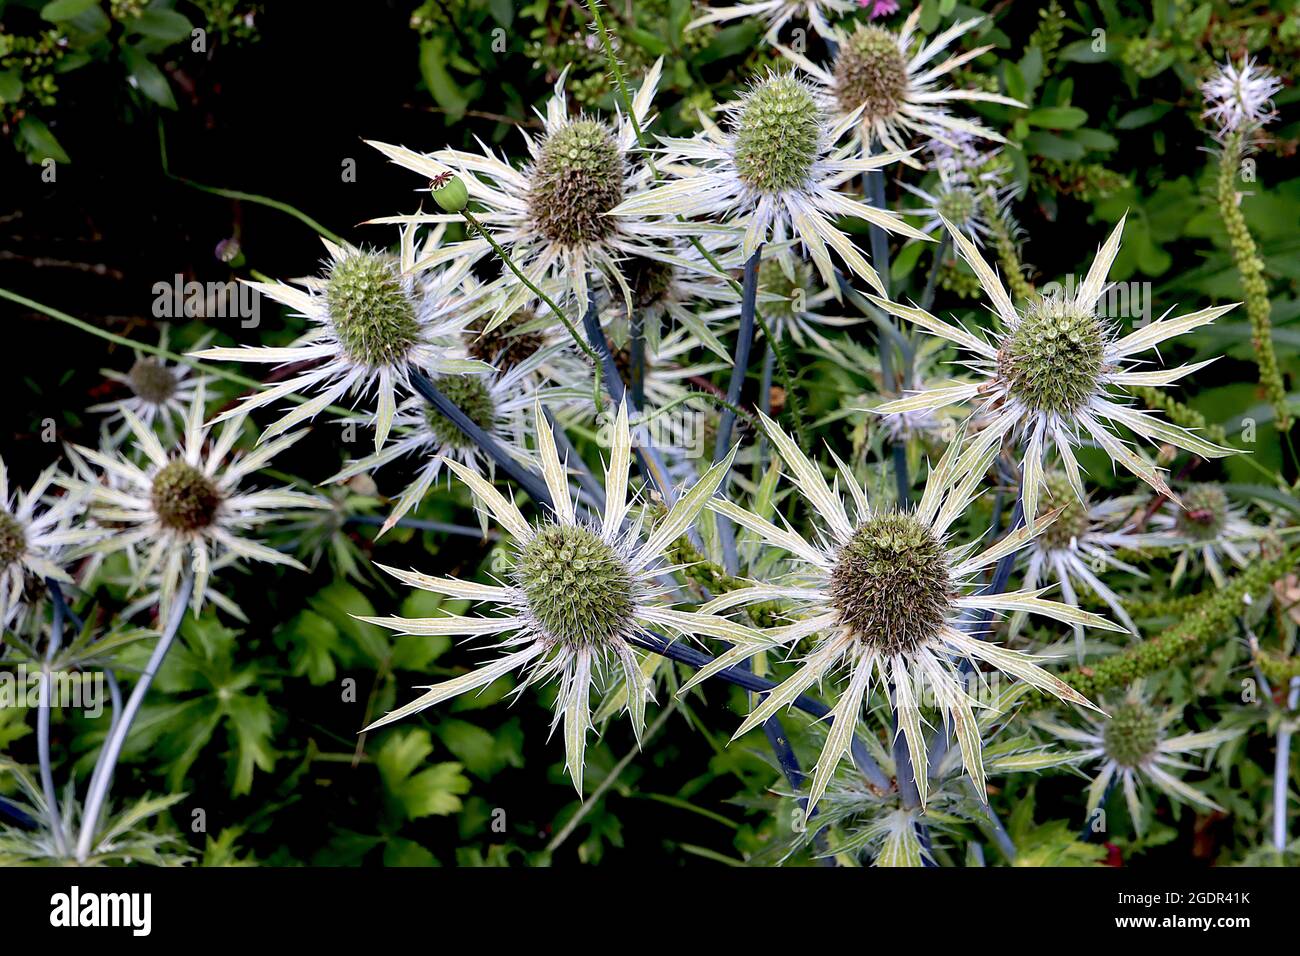 Eryngium x zabelii ‘Jos Eijking’ mare agile Jos Eijking – teste di fiori a forma di cono verde chiaro in cima a bratte verdi grigie, steli blu malva, luglio, Inghilterra Foto Stock